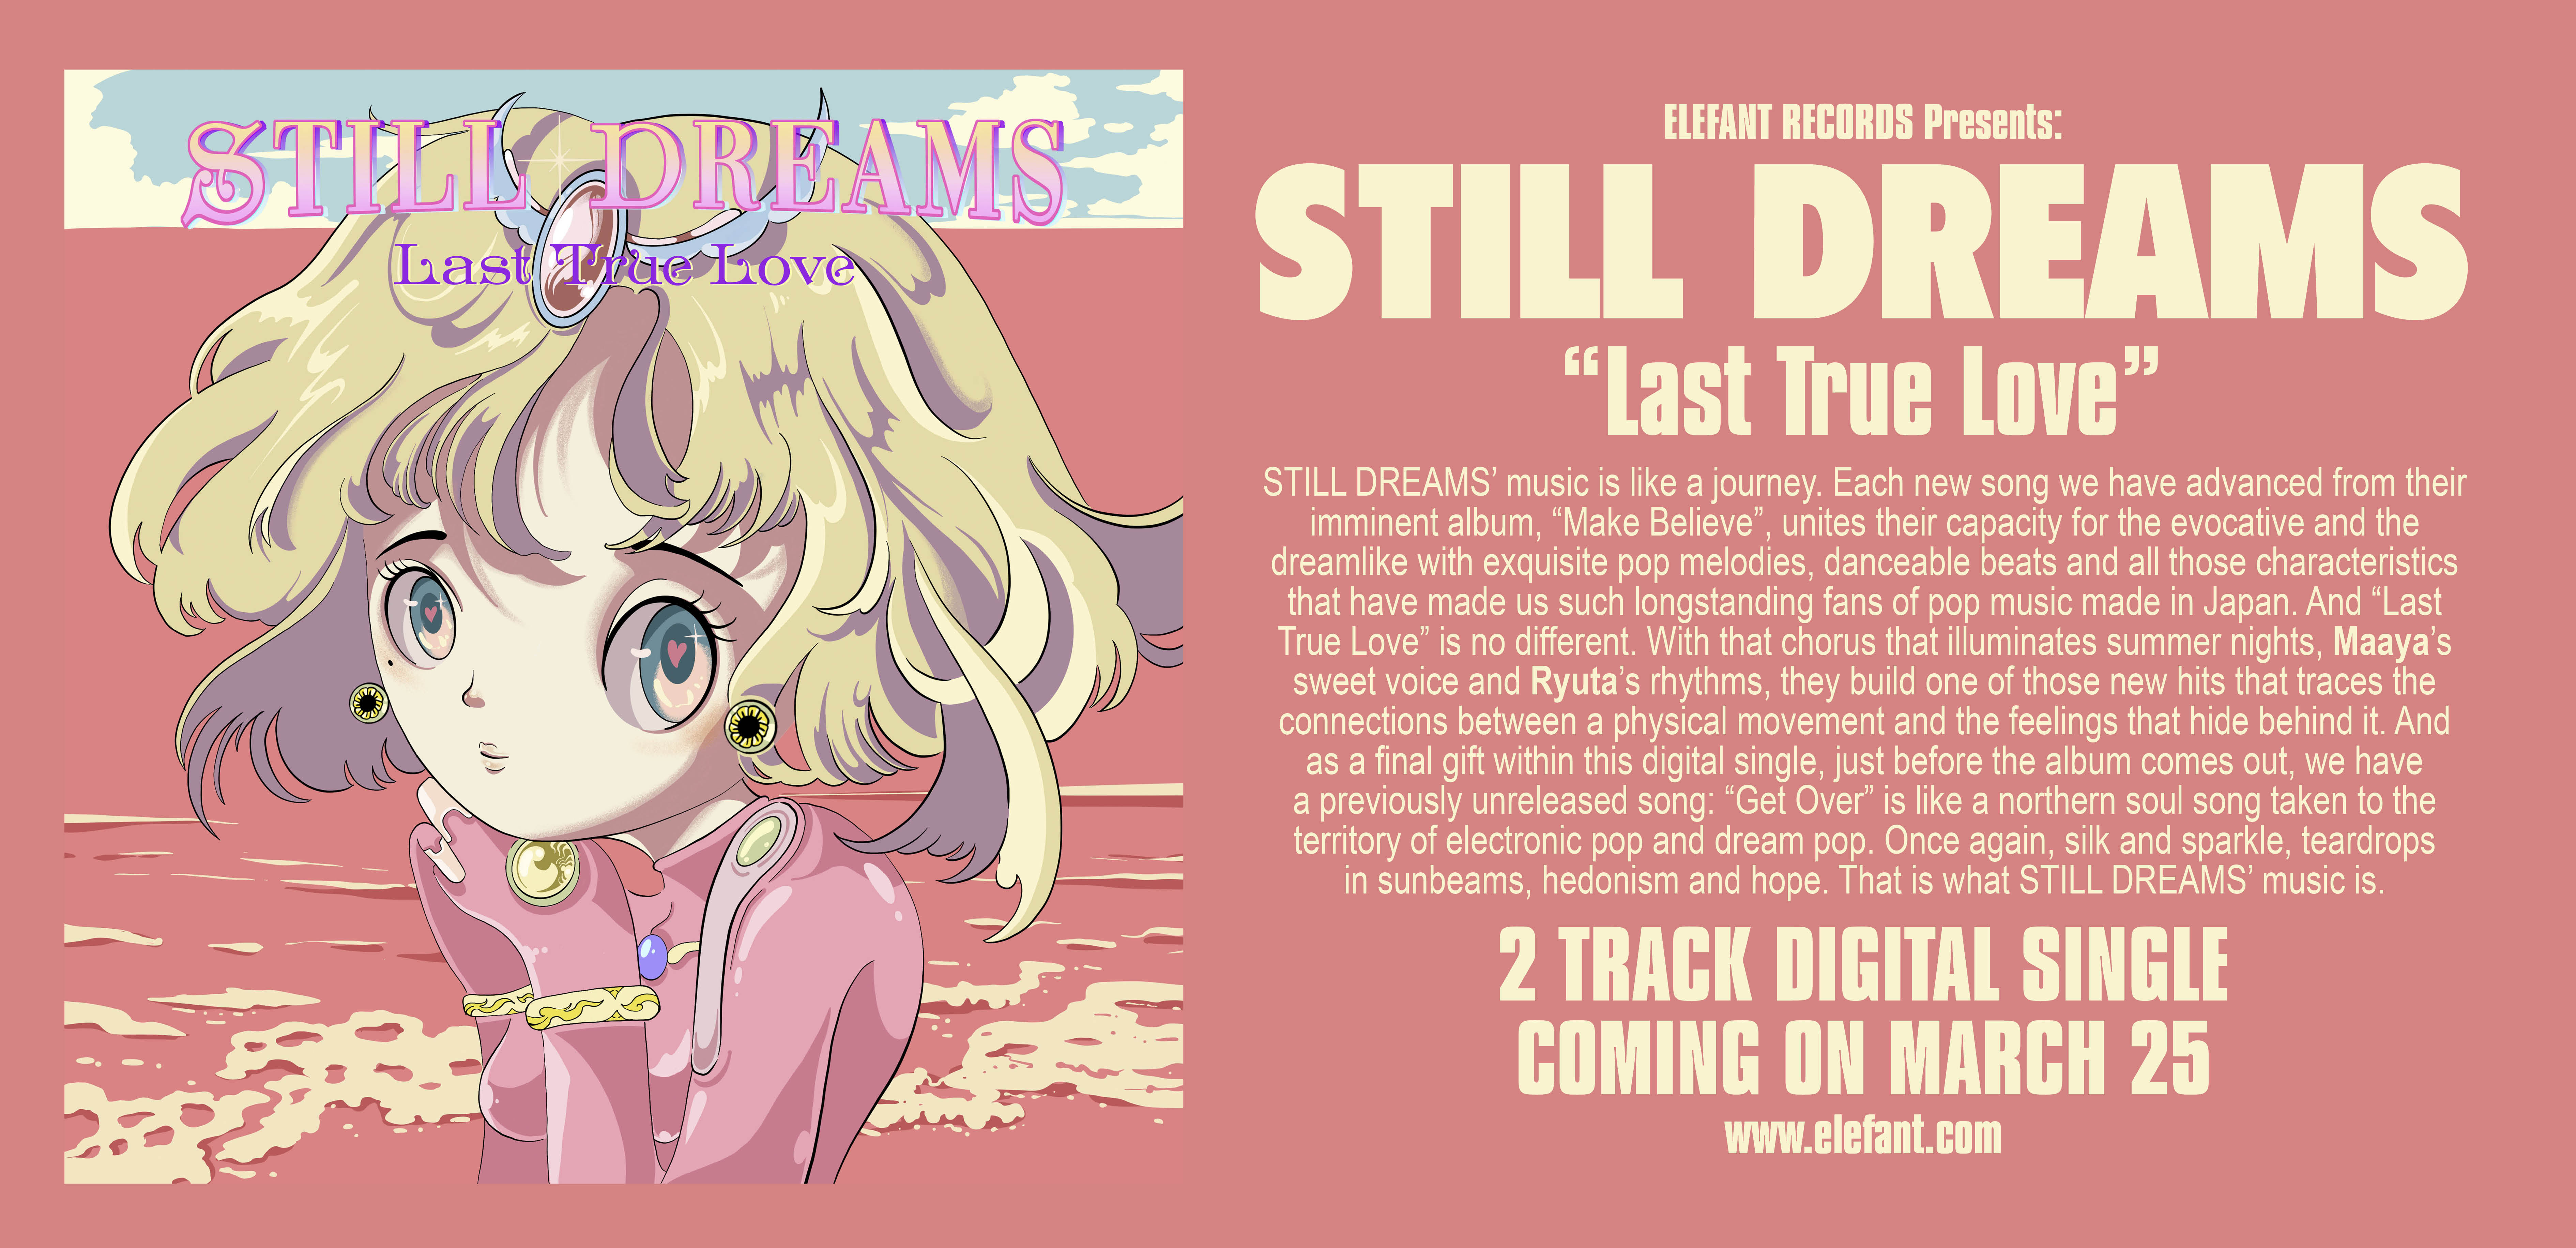 Still Dreams "Last True Love" Single Digital